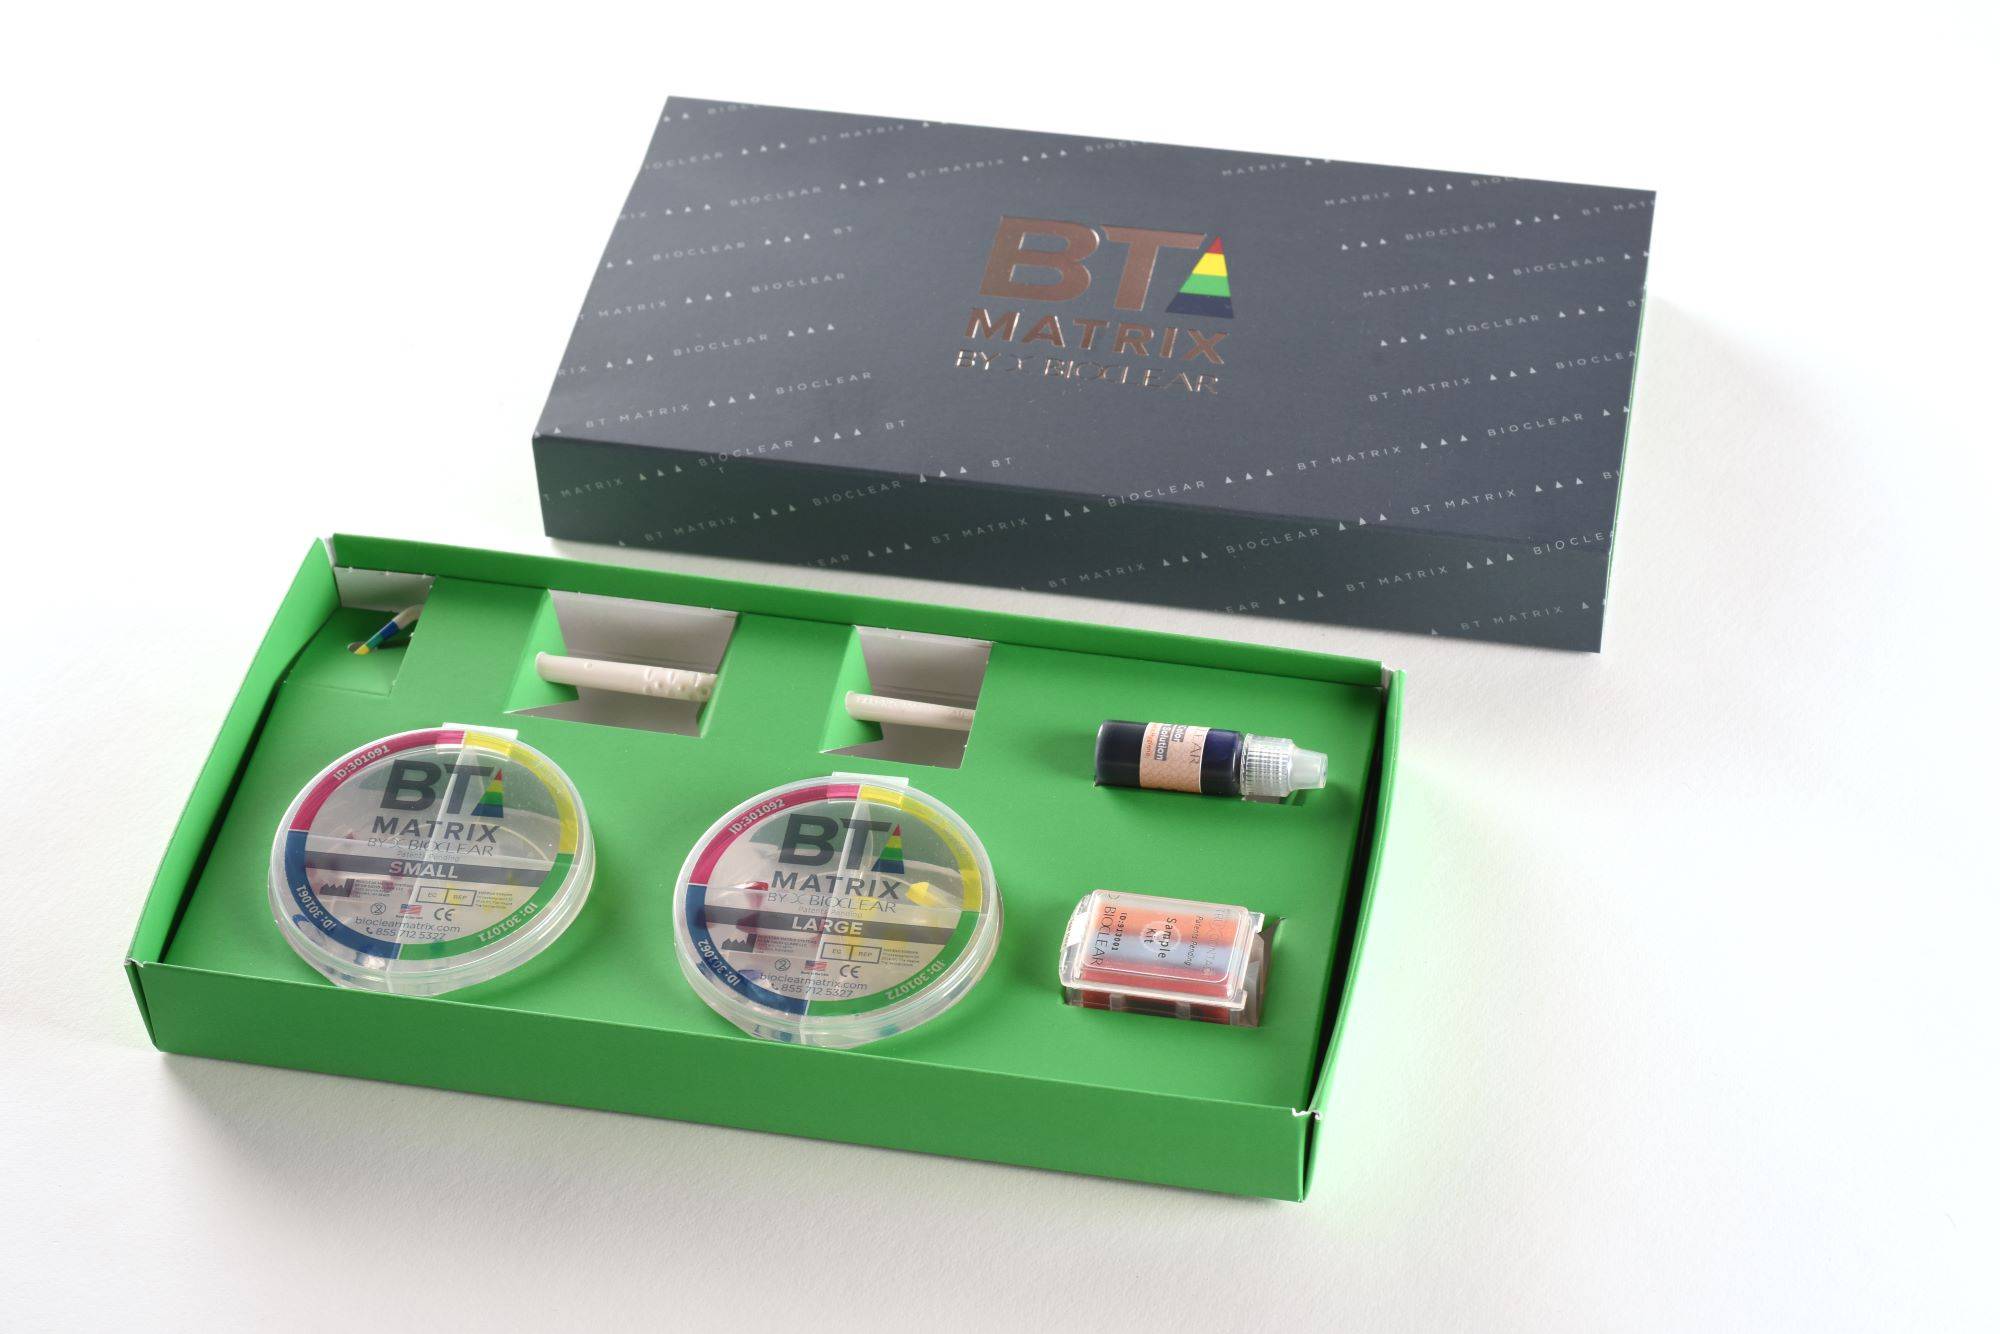 Bioclear Black Triangle matrix kit in a green box